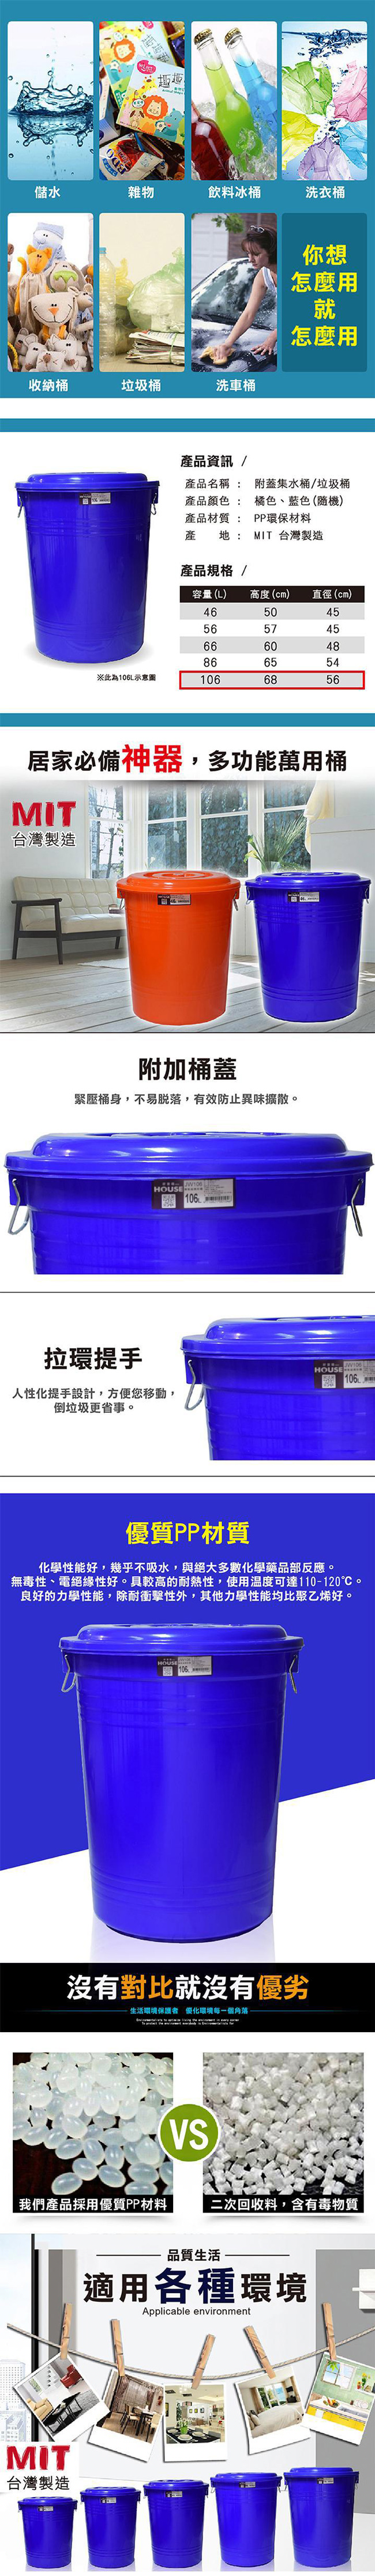 G+居家 垃圾桶萬用桶儲水桶-106L(2入組)